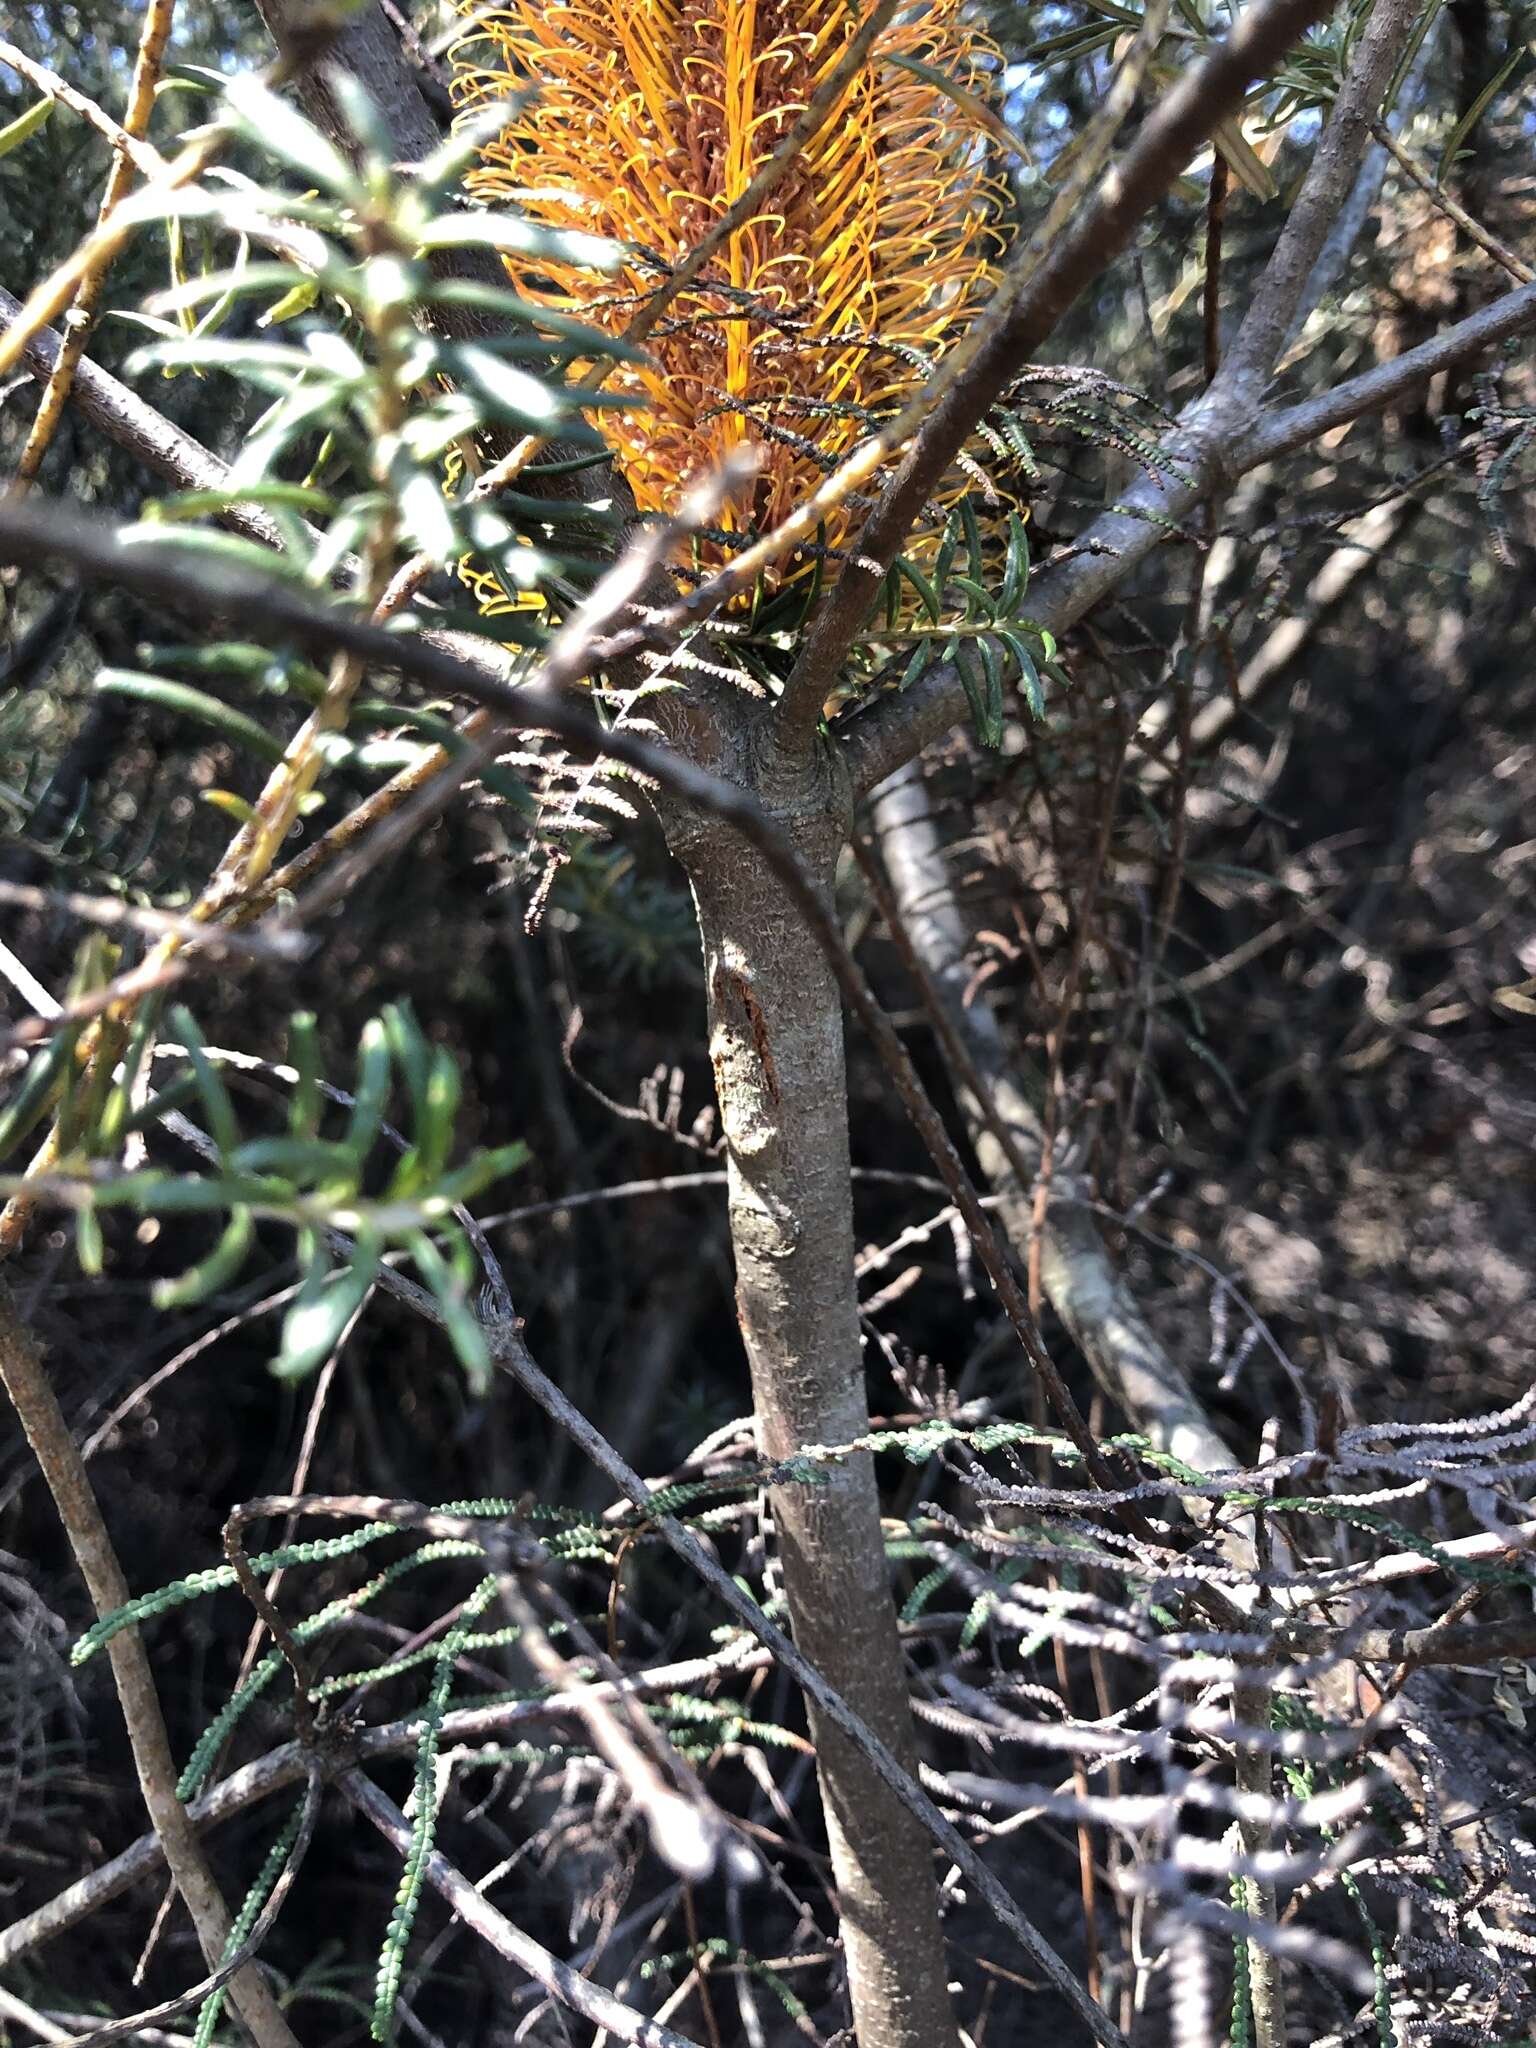 Image of Banksia ericifolia subsp. ericifolia